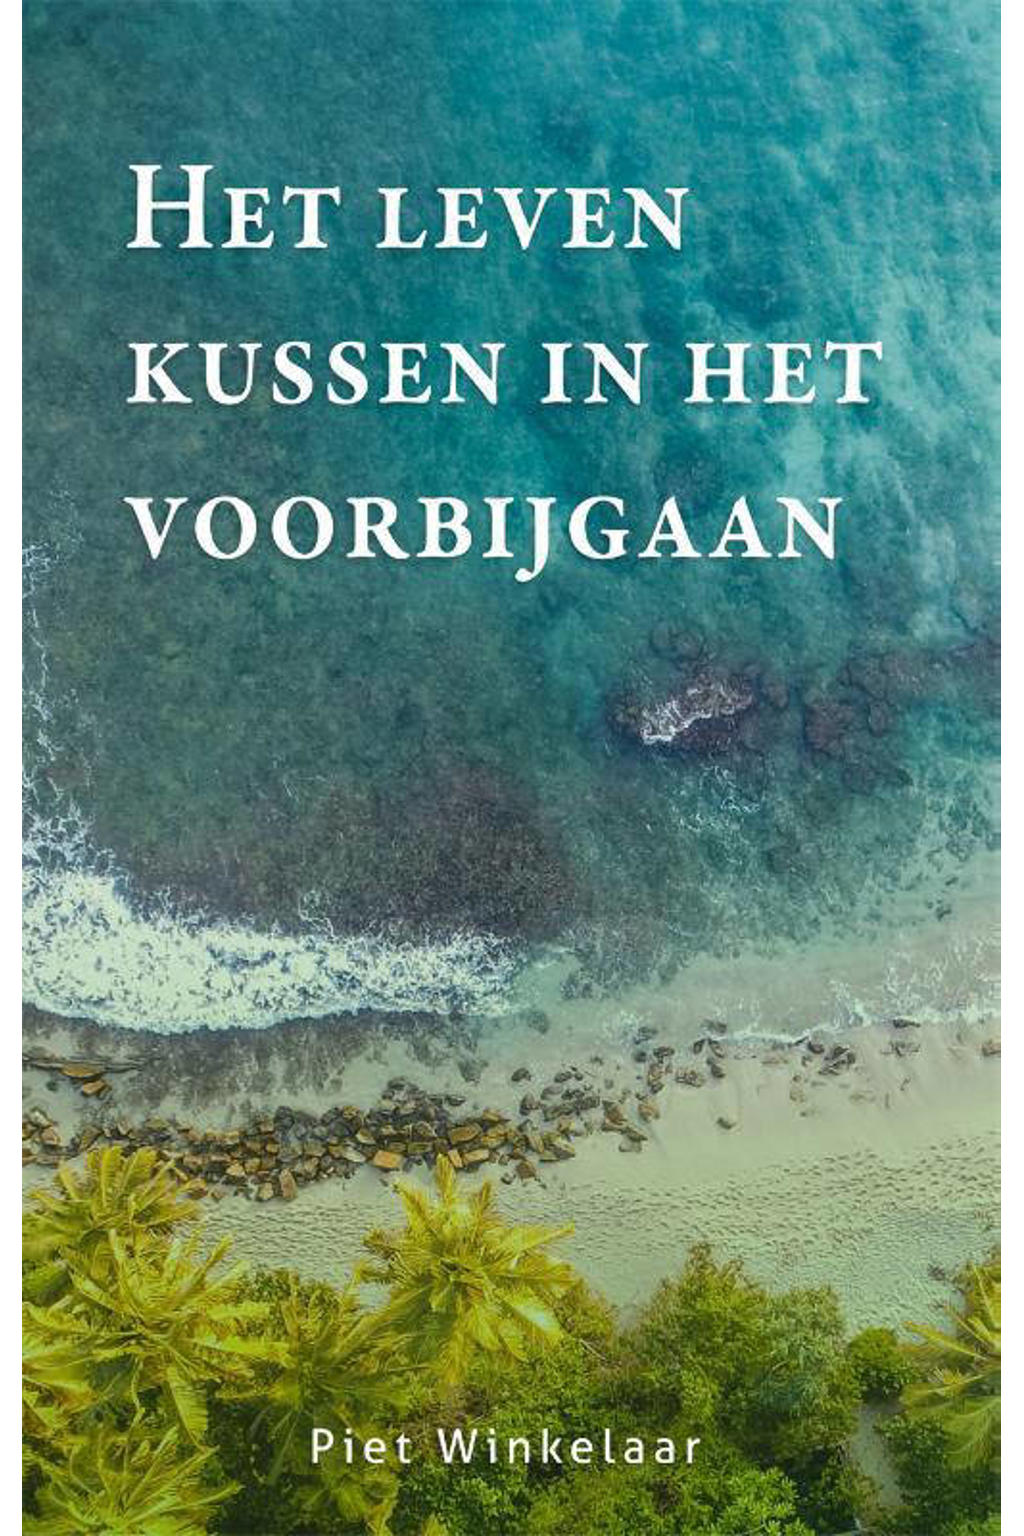 Het leven kussen in het voorbijgaan - Piet Winkelaar